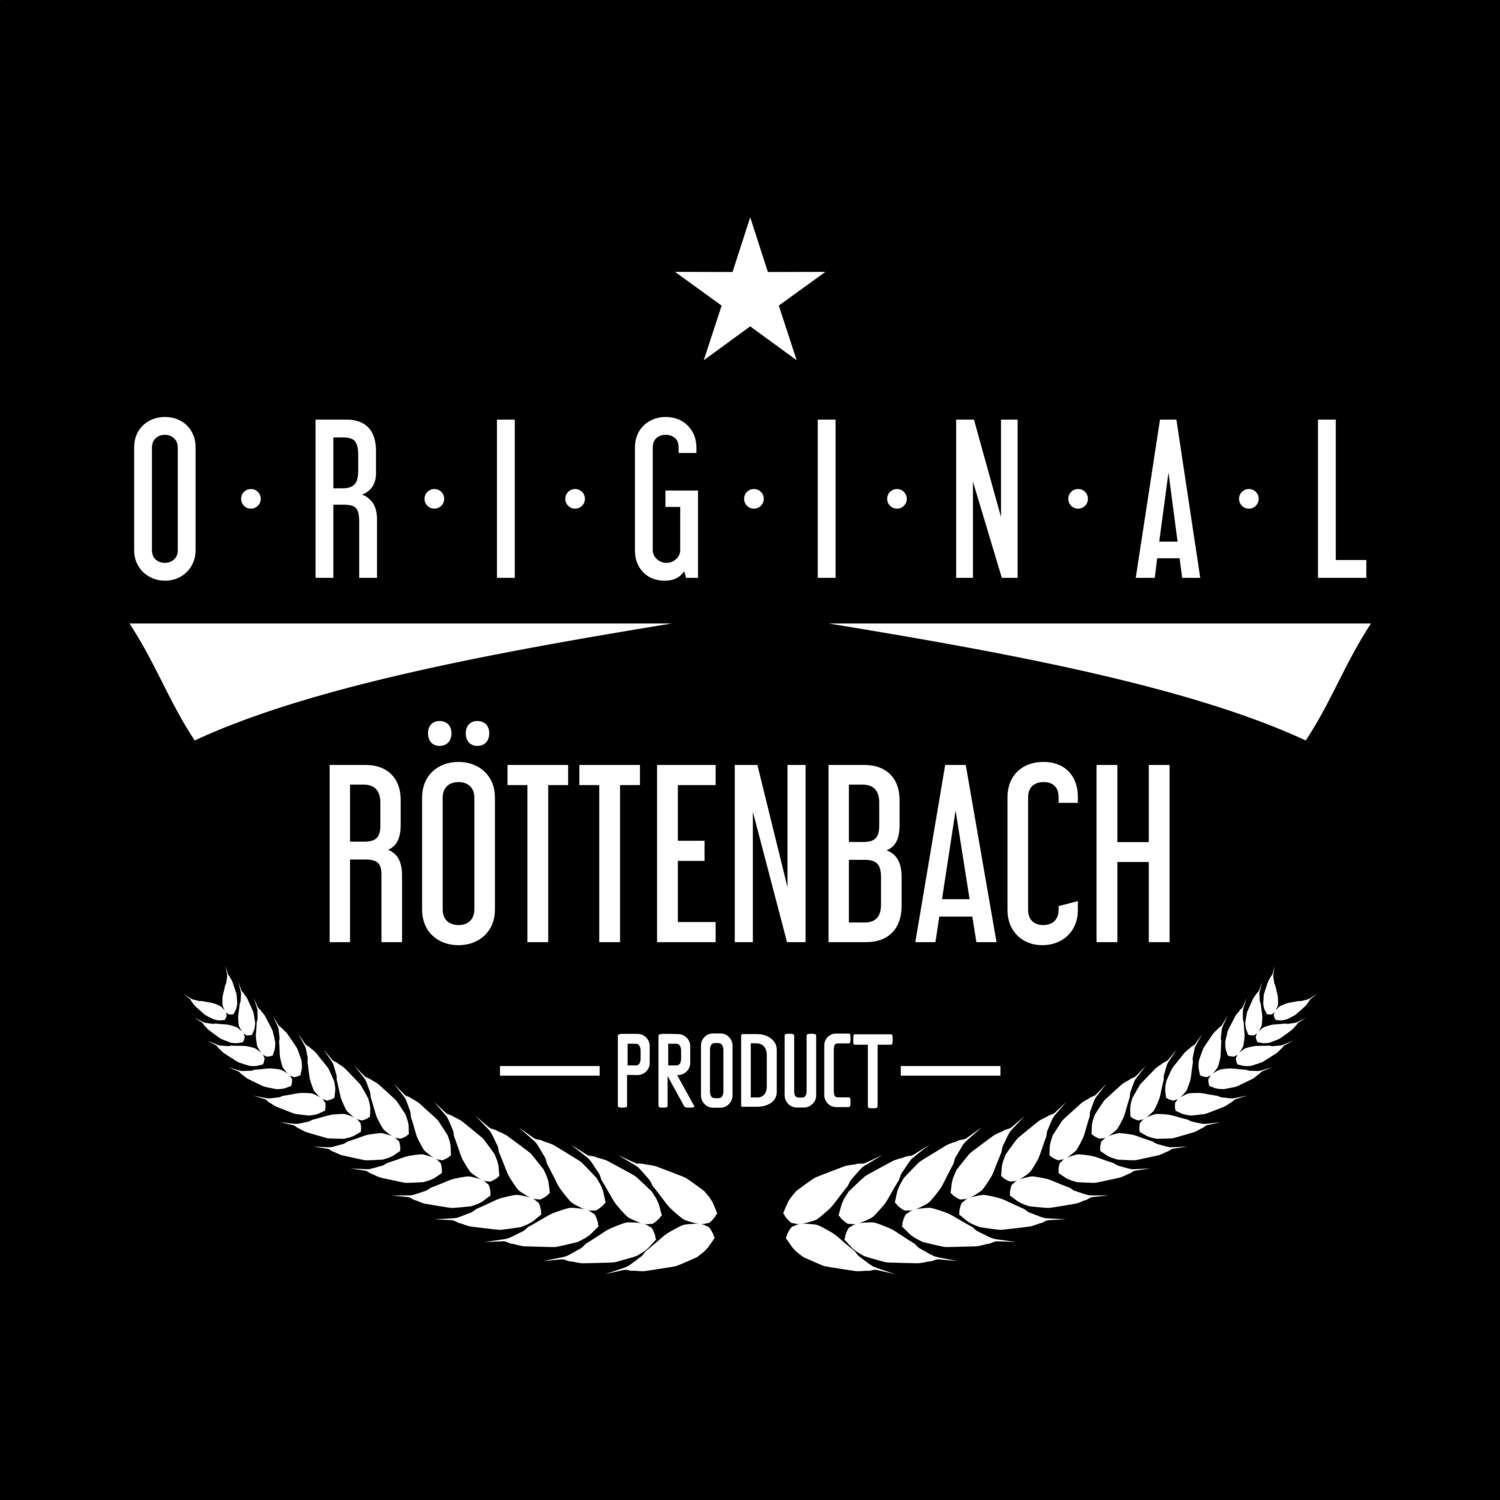 Röttenbach T-Shirt »Original Product«